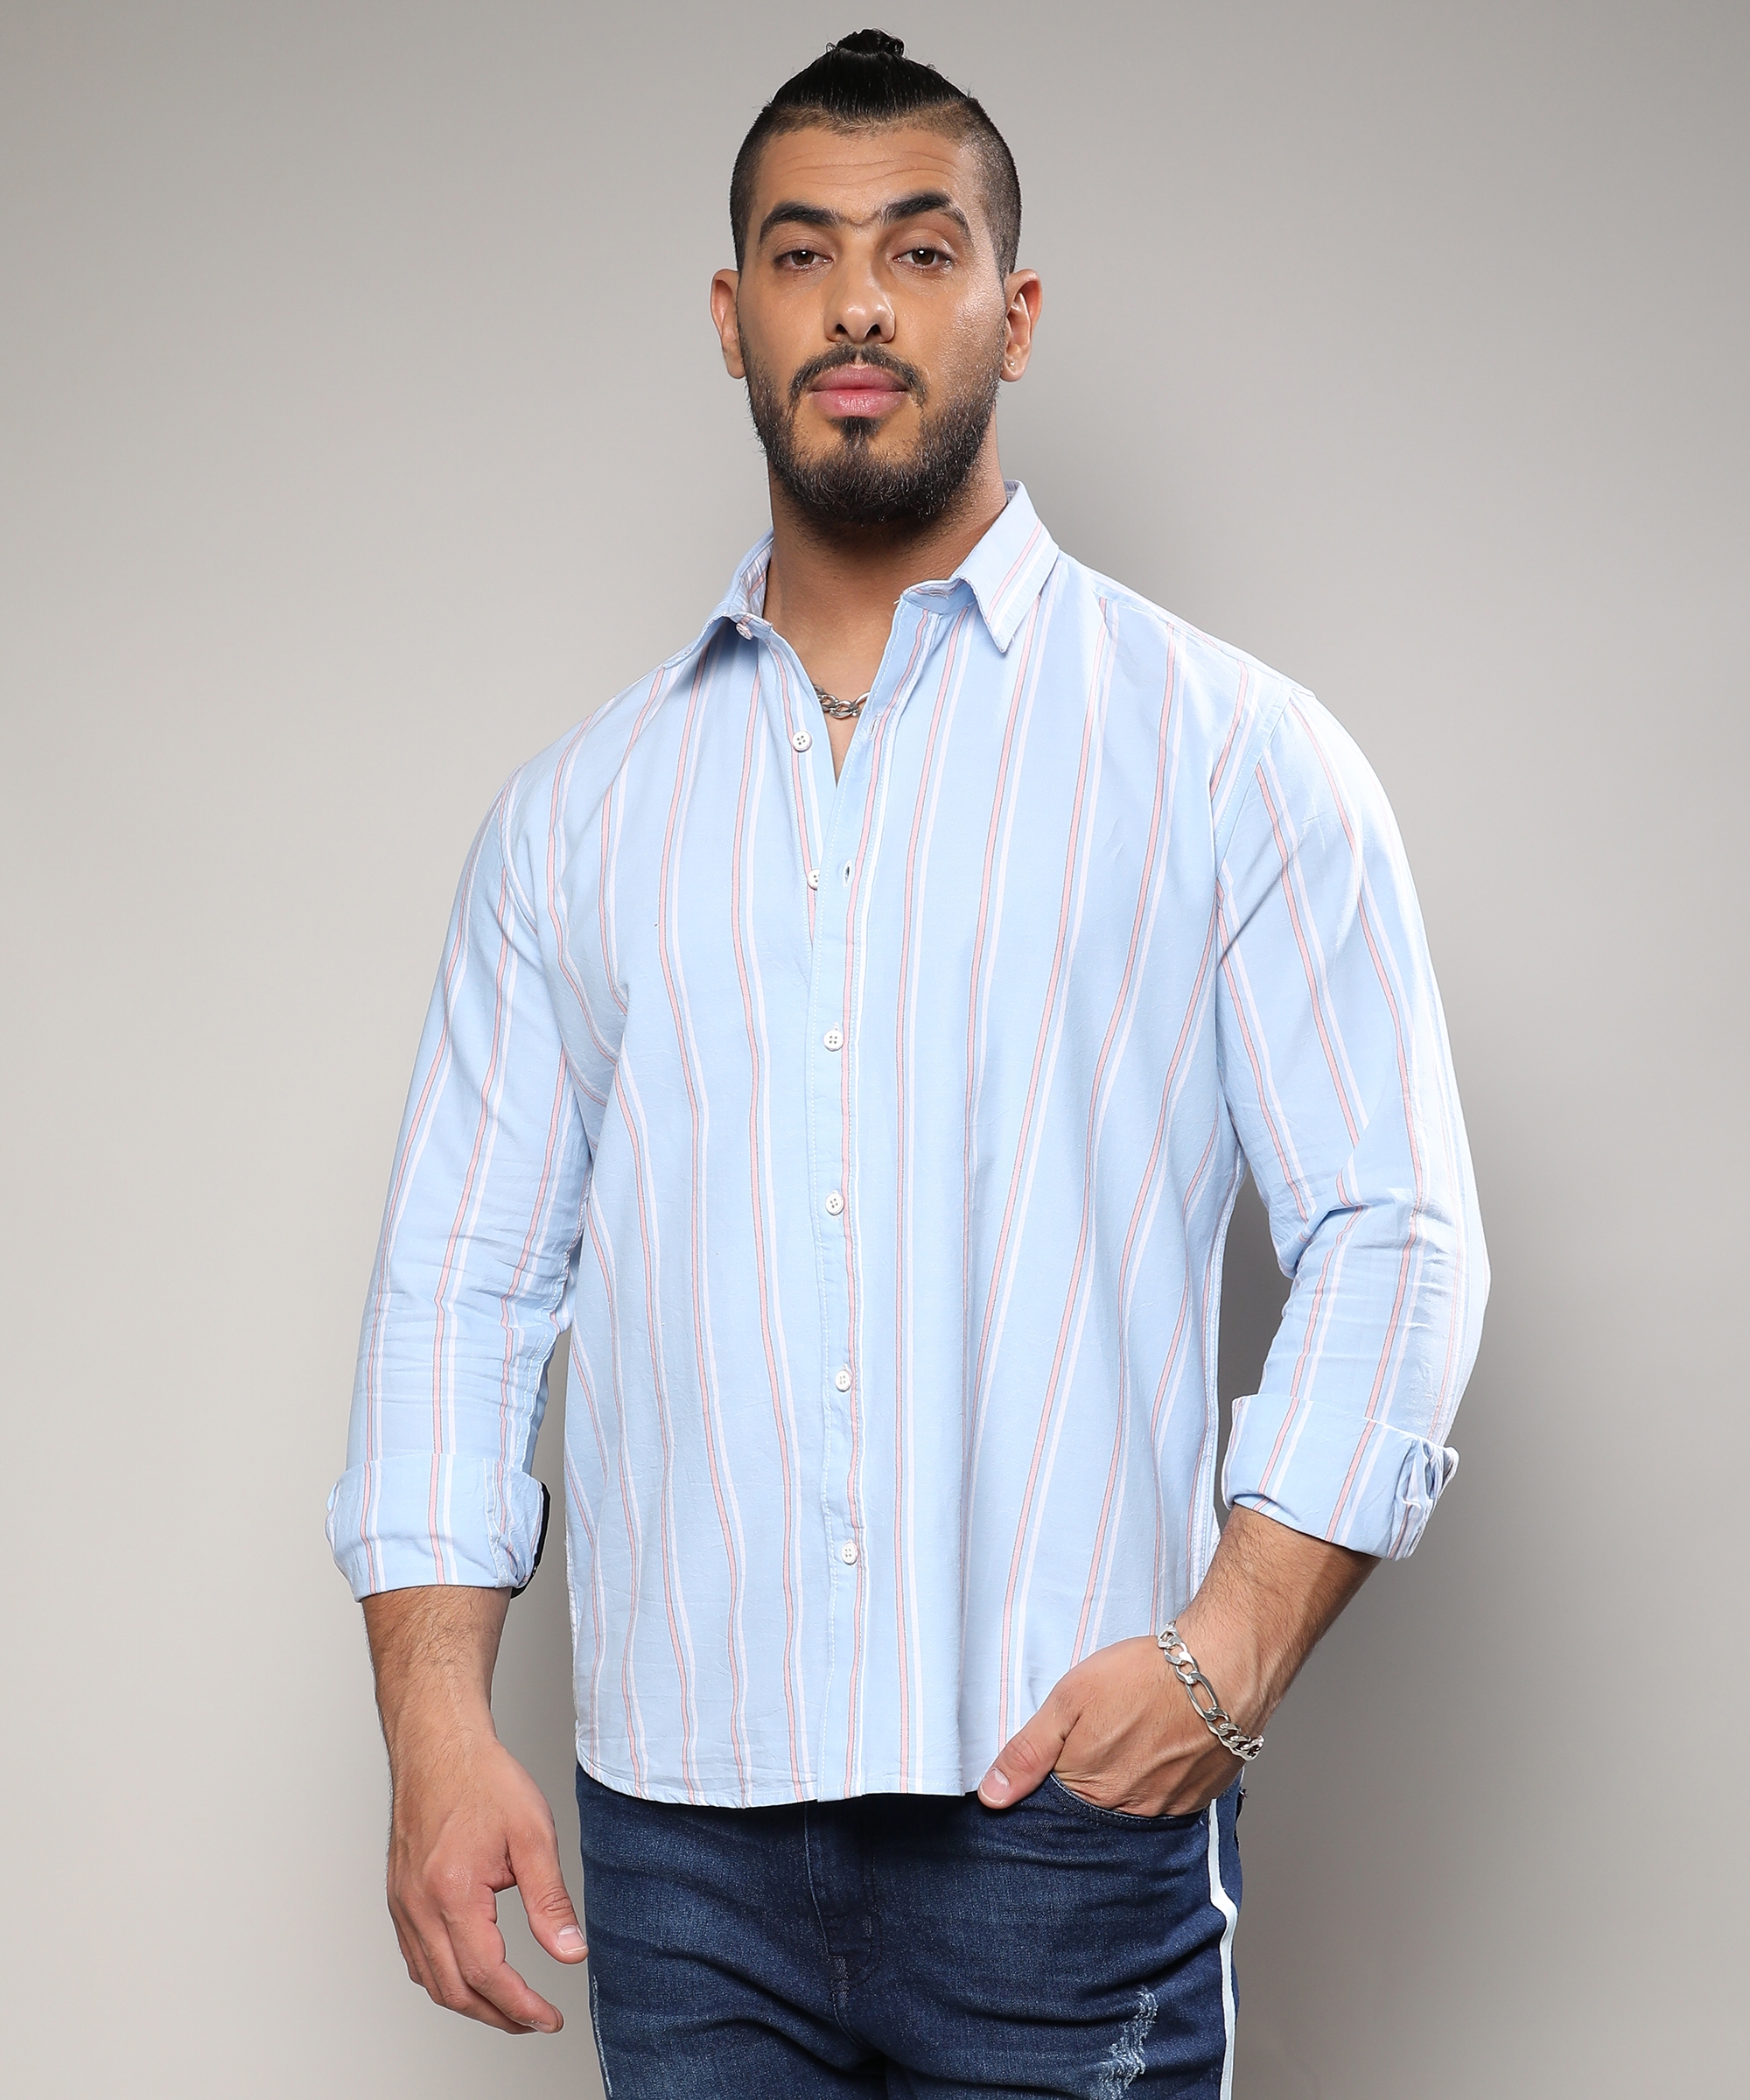 Instafab Plus | Men's Blue Striped Cotton Shirt